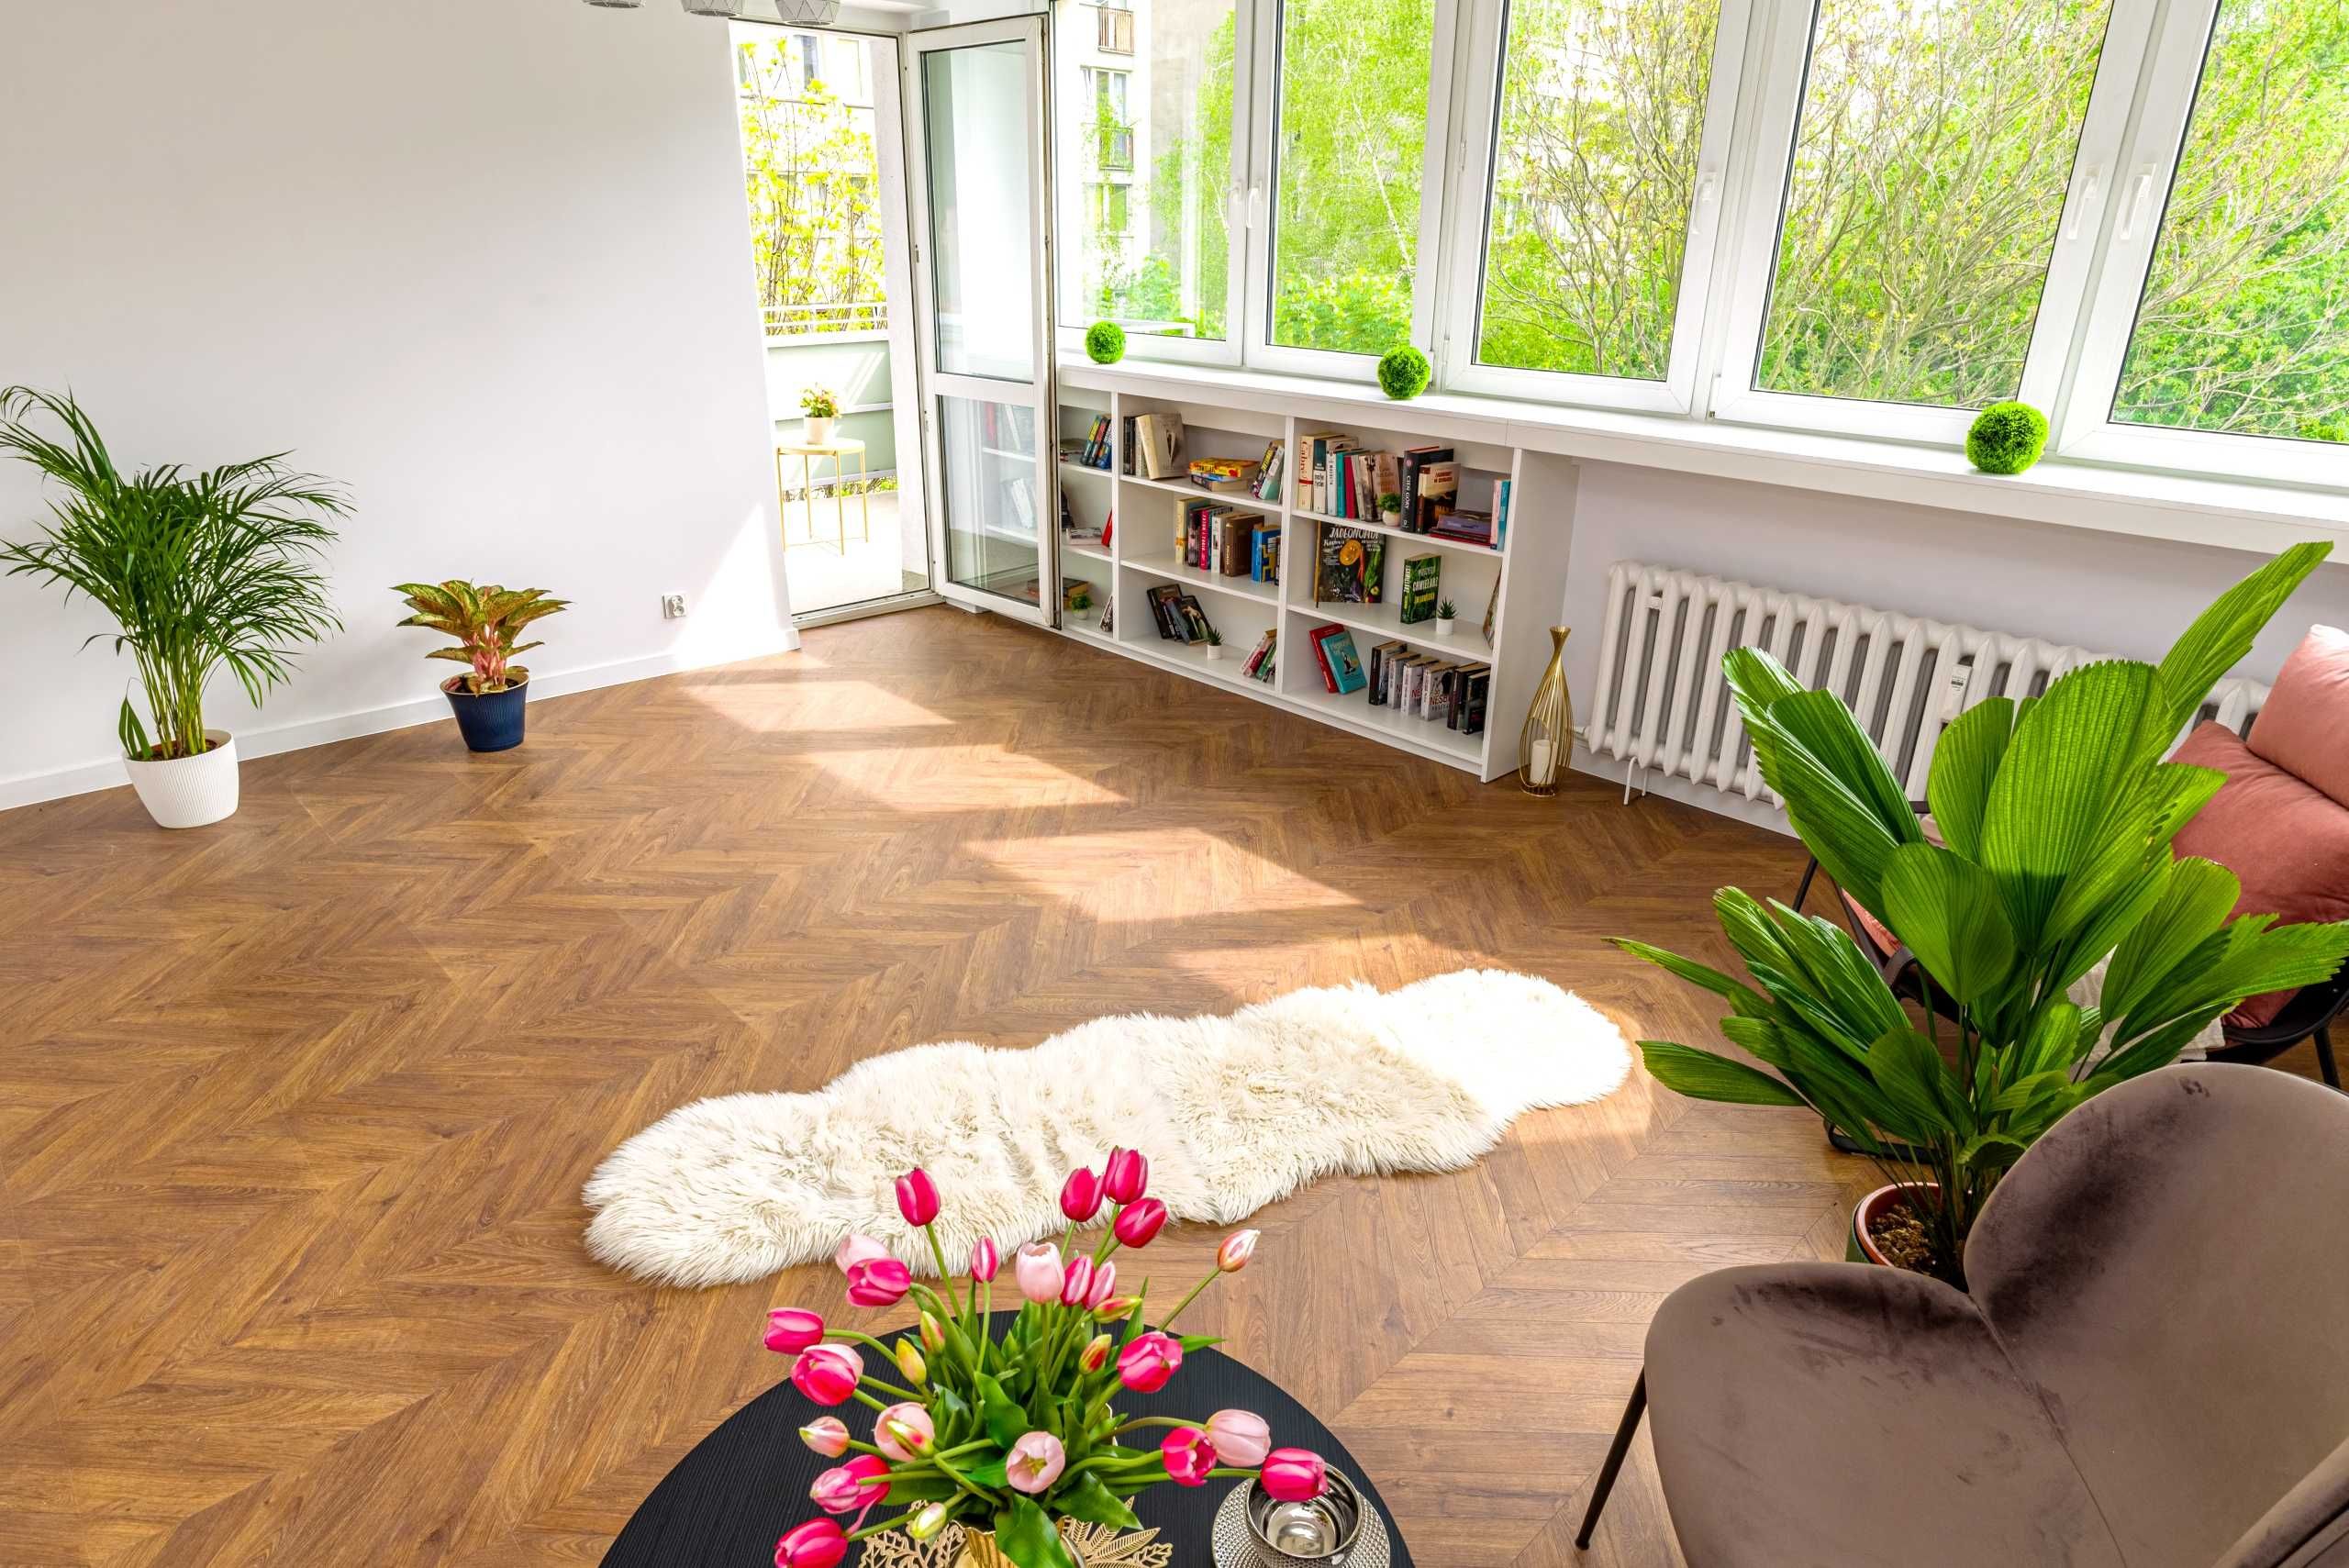 Sprzedam Mieszkanie 3 pokoje, 57 m2, Balkon,TOP lokalizacja / Szczepin